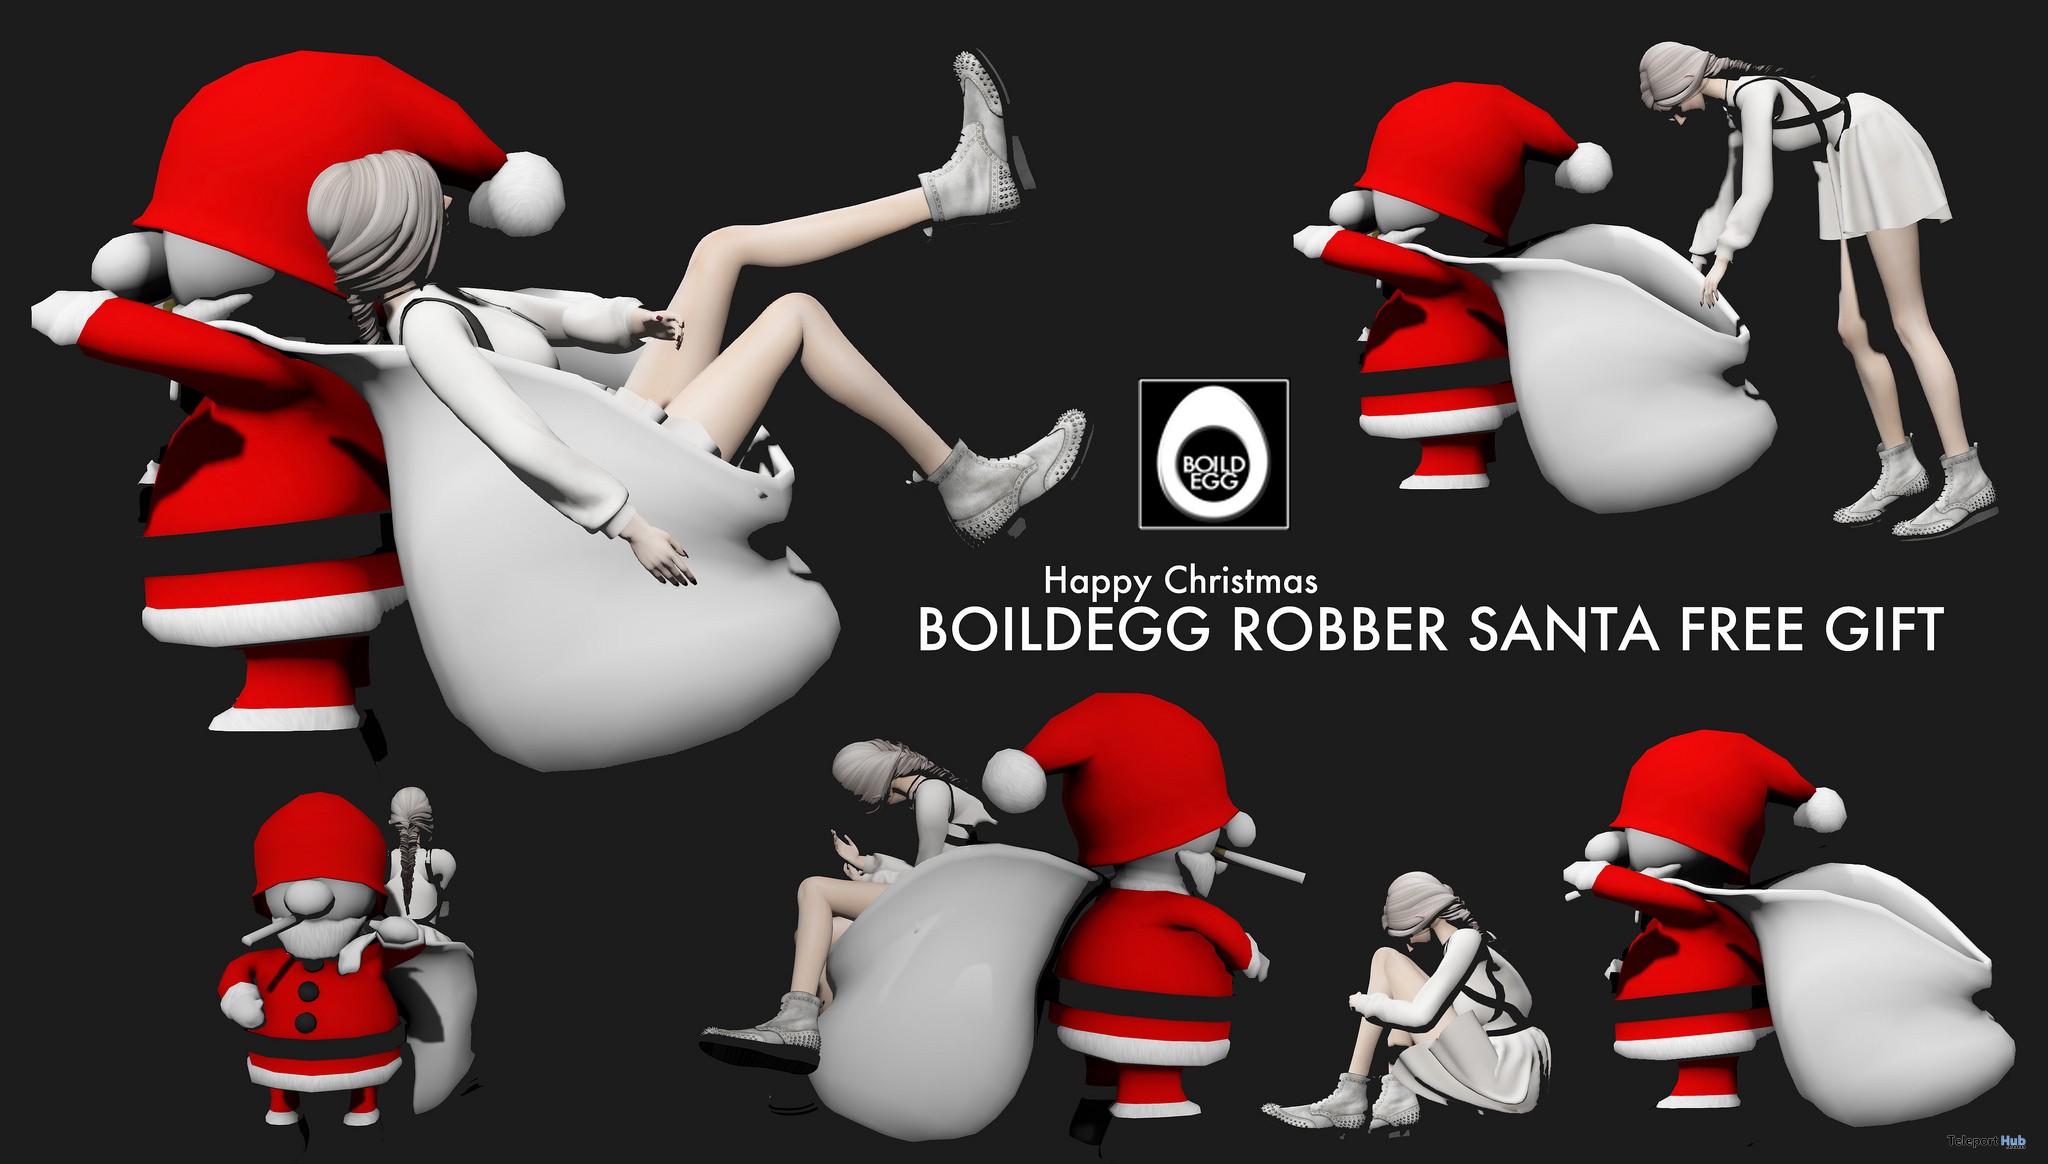 Robber Santa Christmas Gift by BOILDEGG - Teleport Hub - teleporthub.com